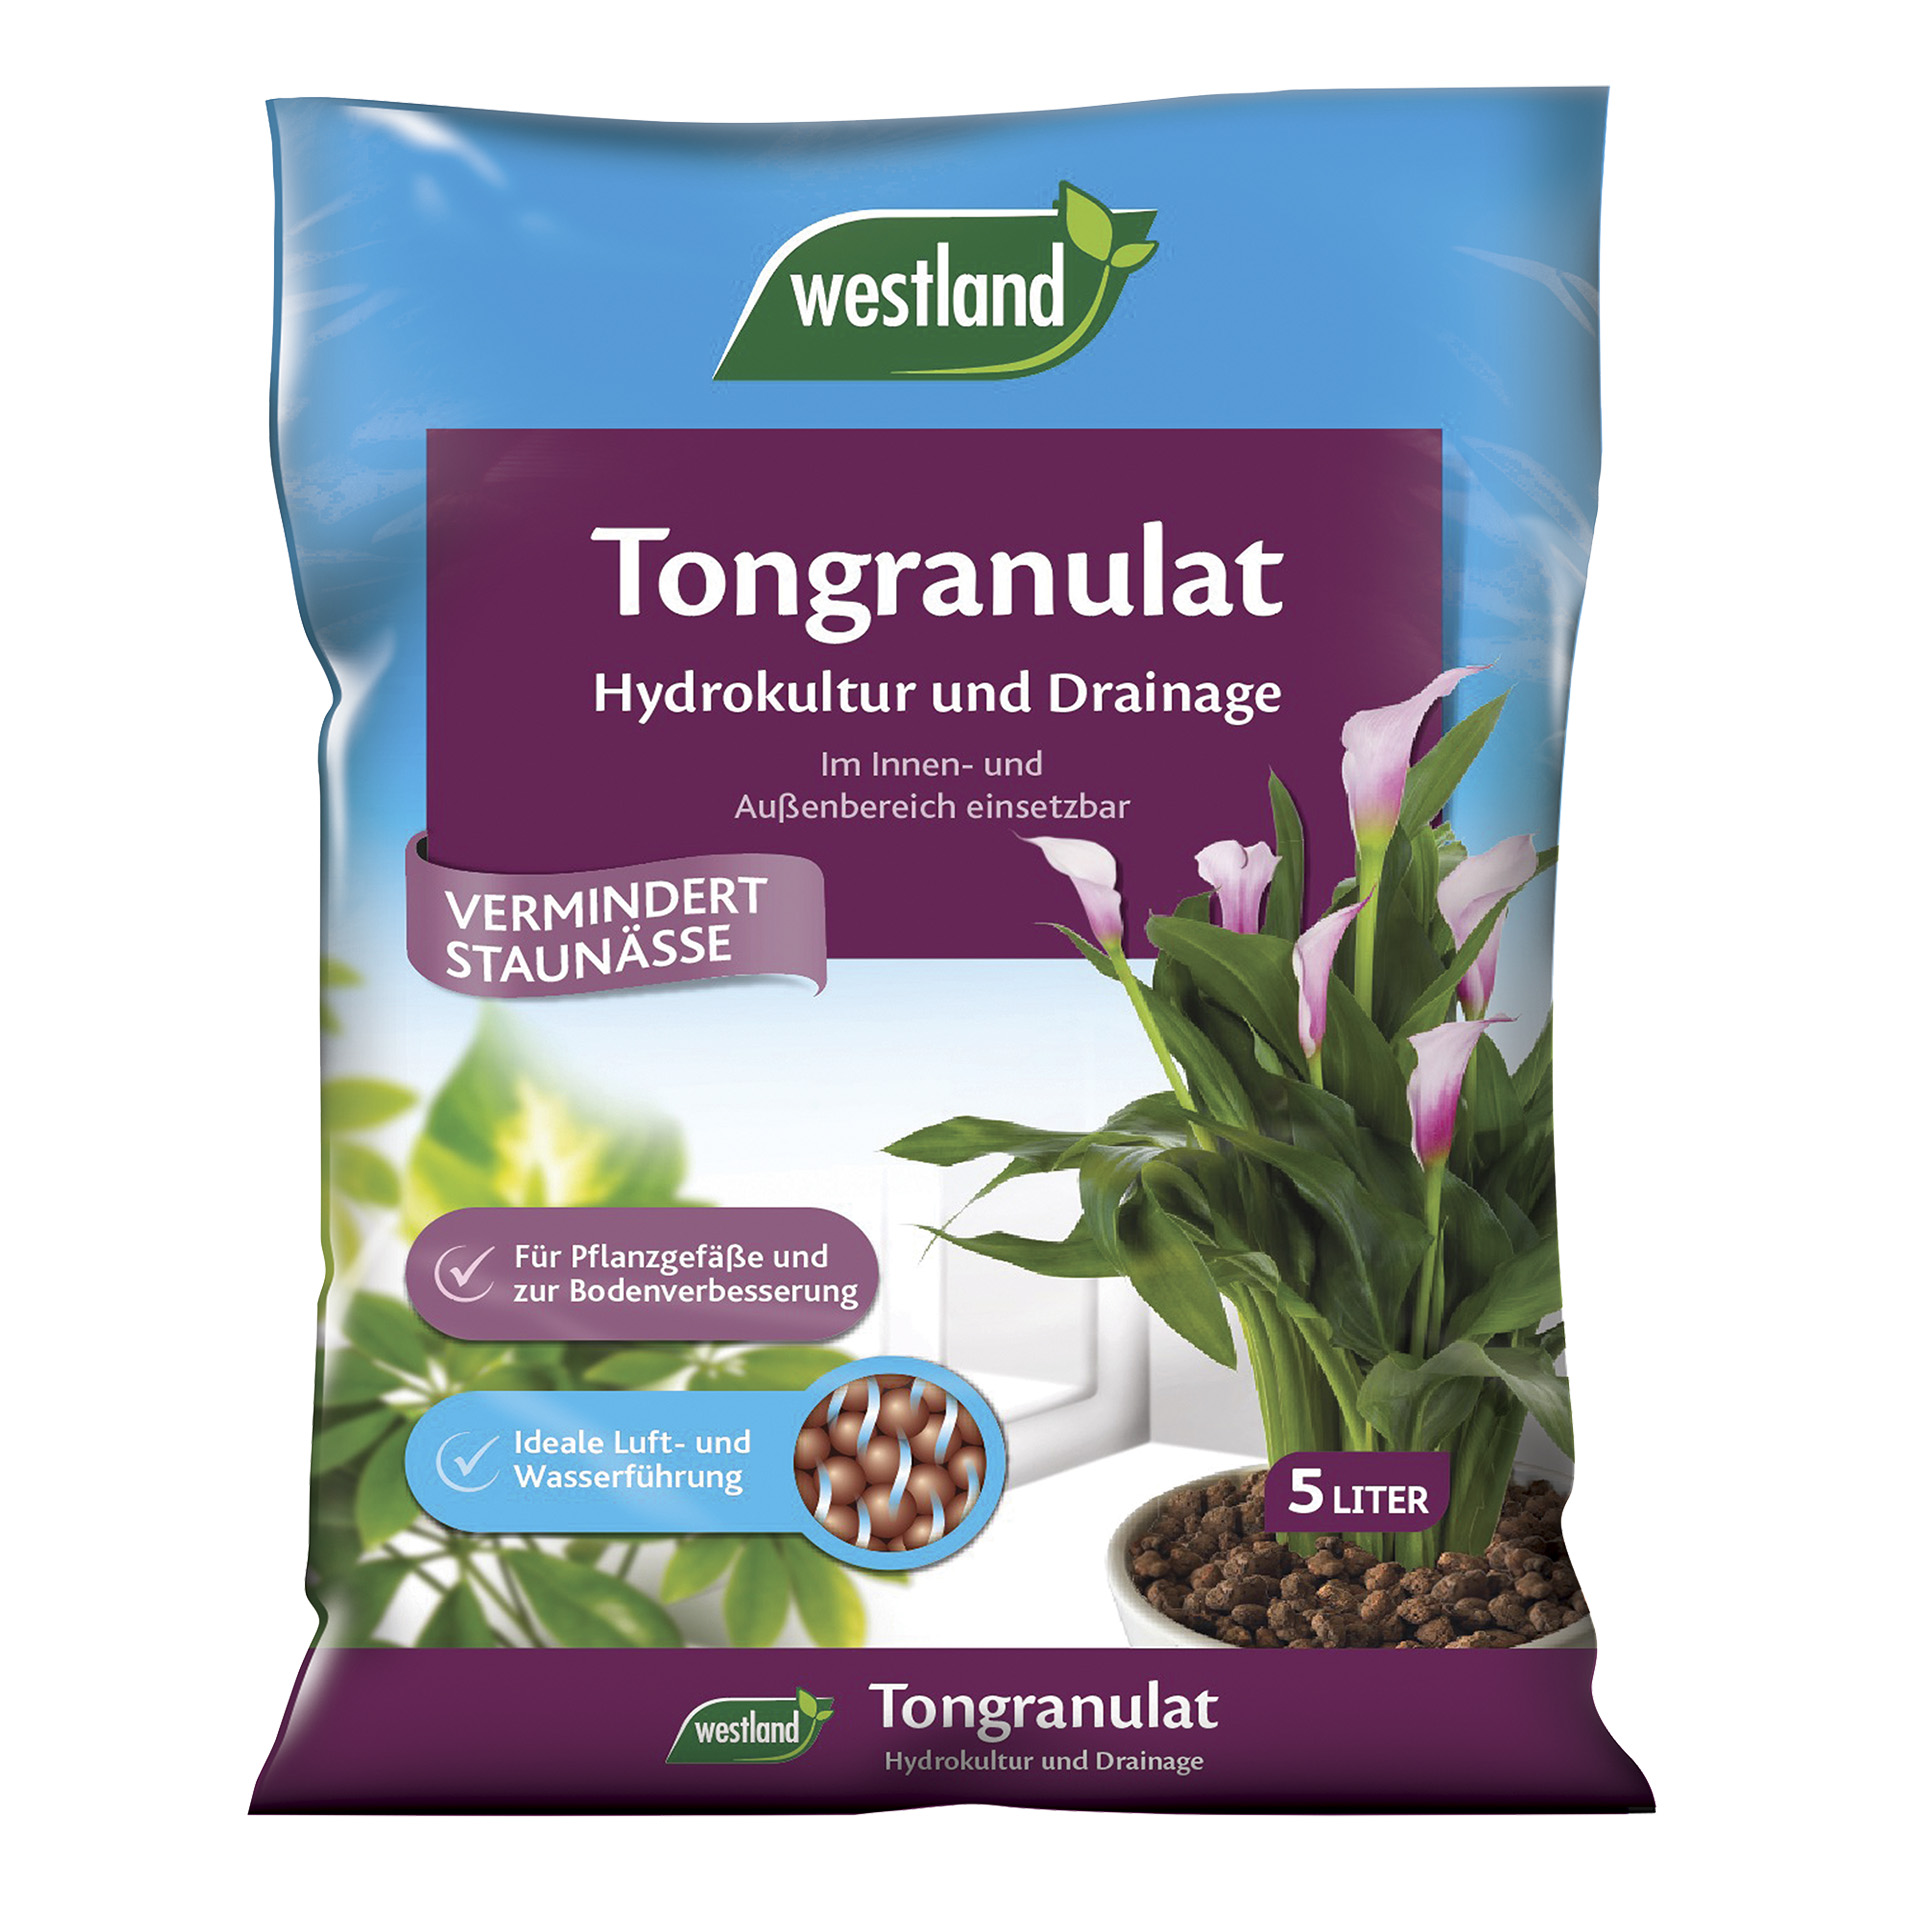 Abbildung des Tongranulates und blühende Pflanze auf Beutel 5l